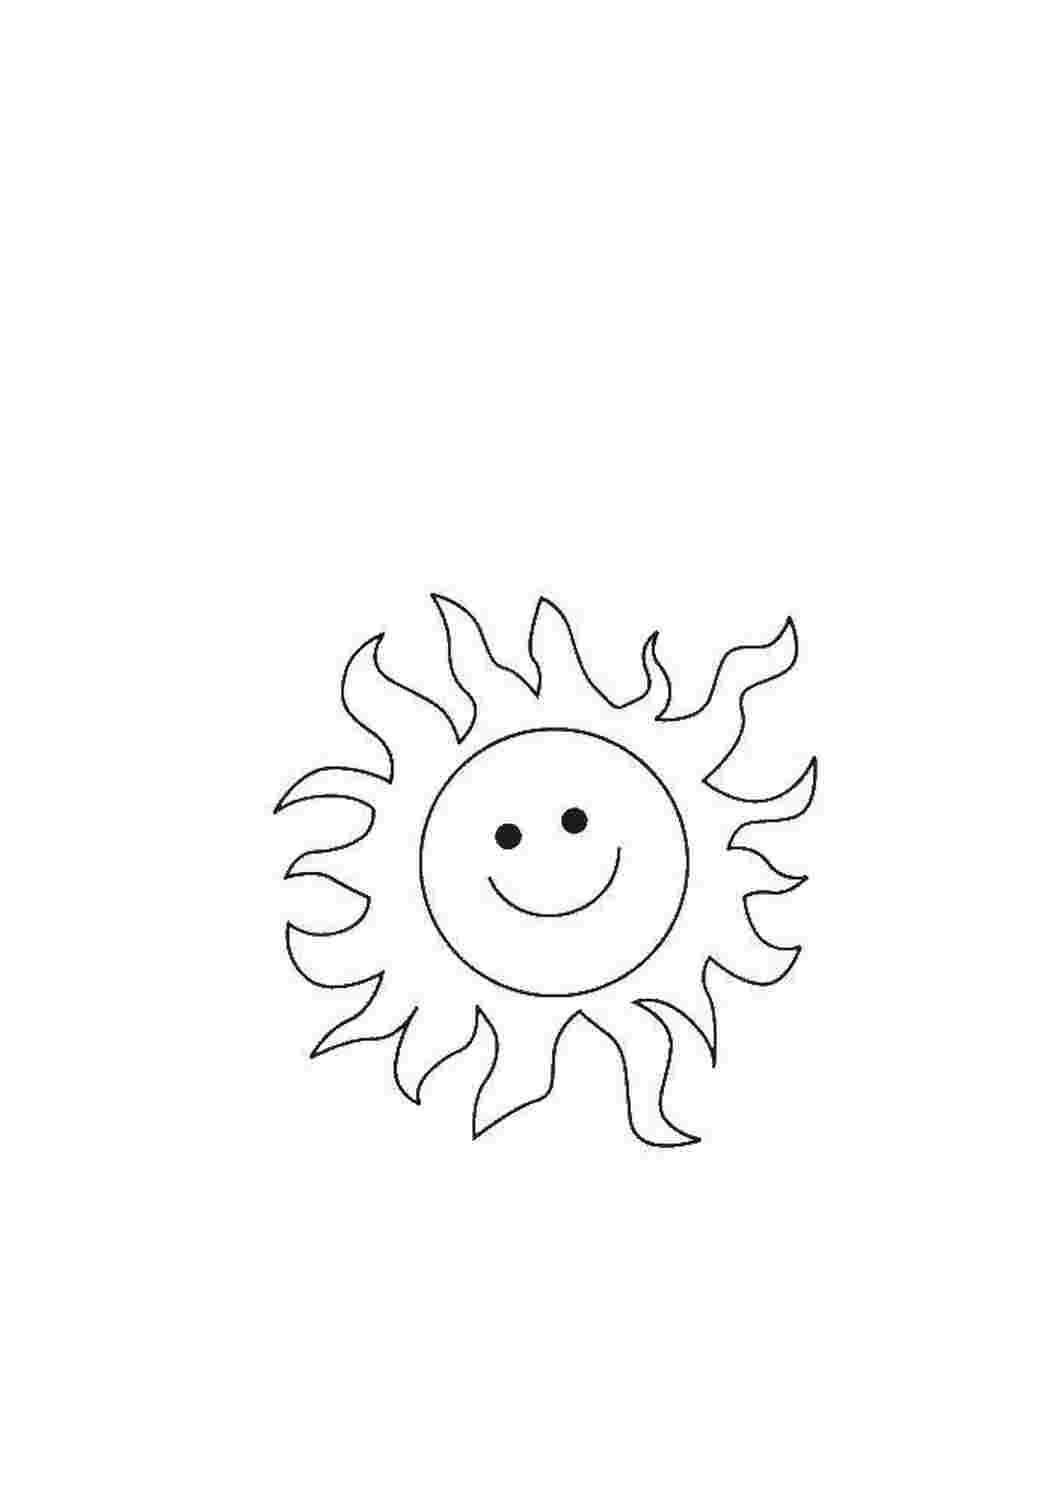 Покажи как нарисовать солнце